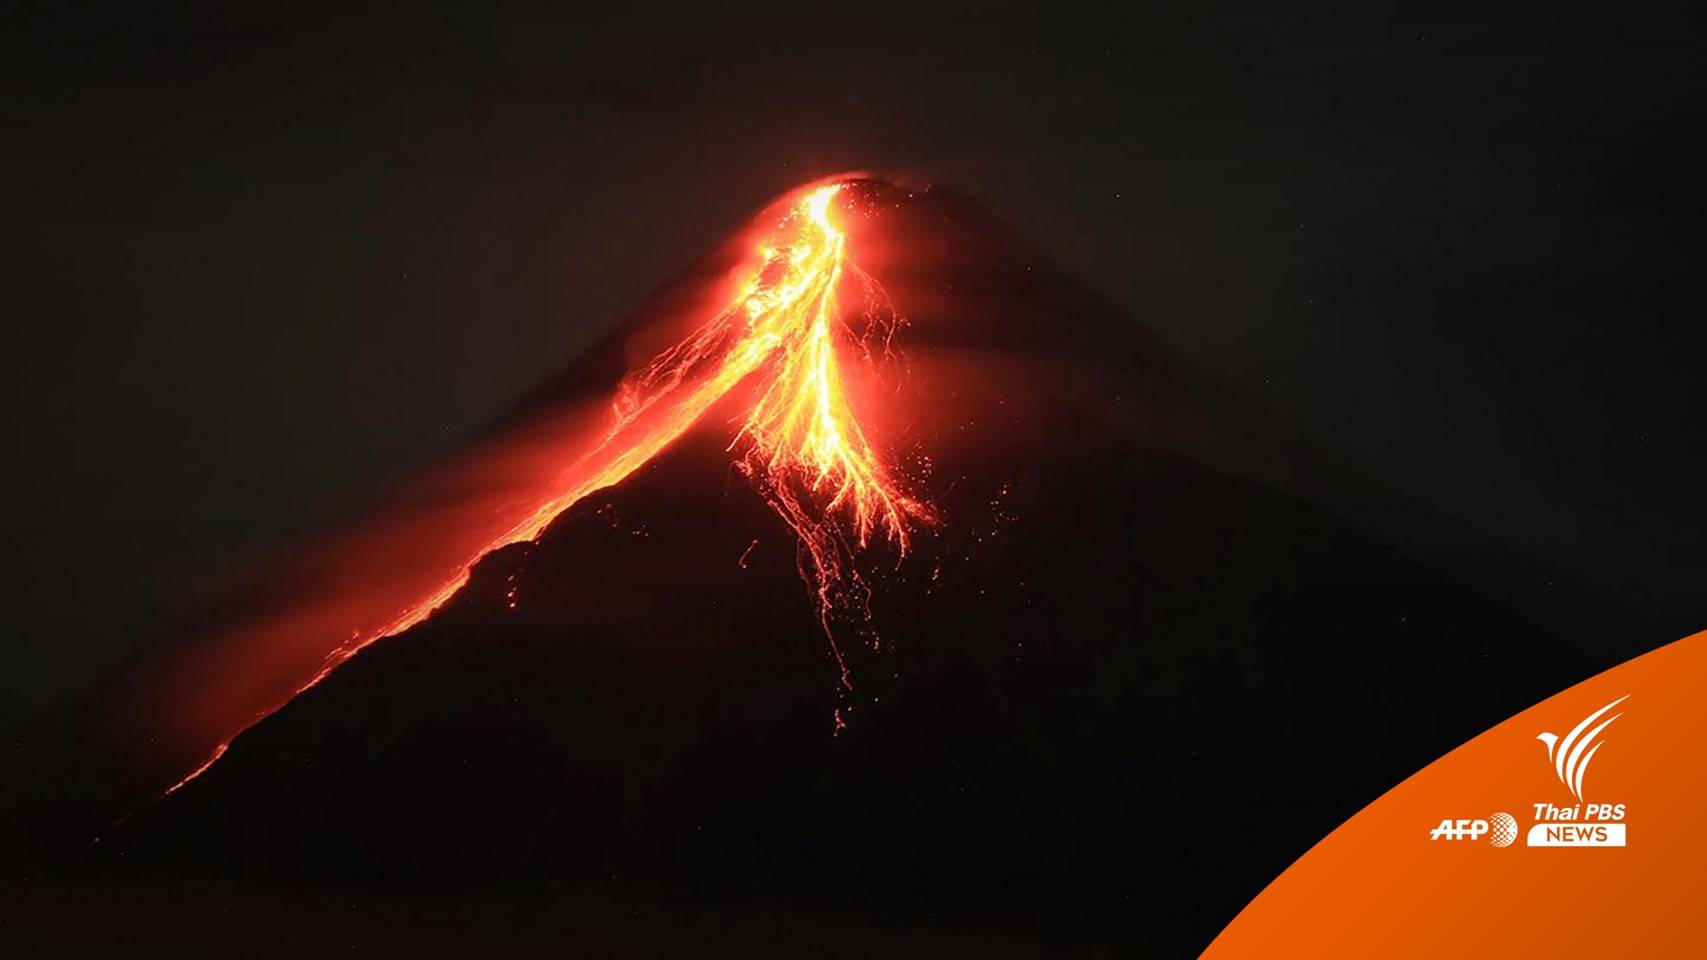 ภูเขาไฟ "มายอน" ฟิลิปปินส์ปะทุพ่นลาวา อพยพคนรัศมี 6 กม.